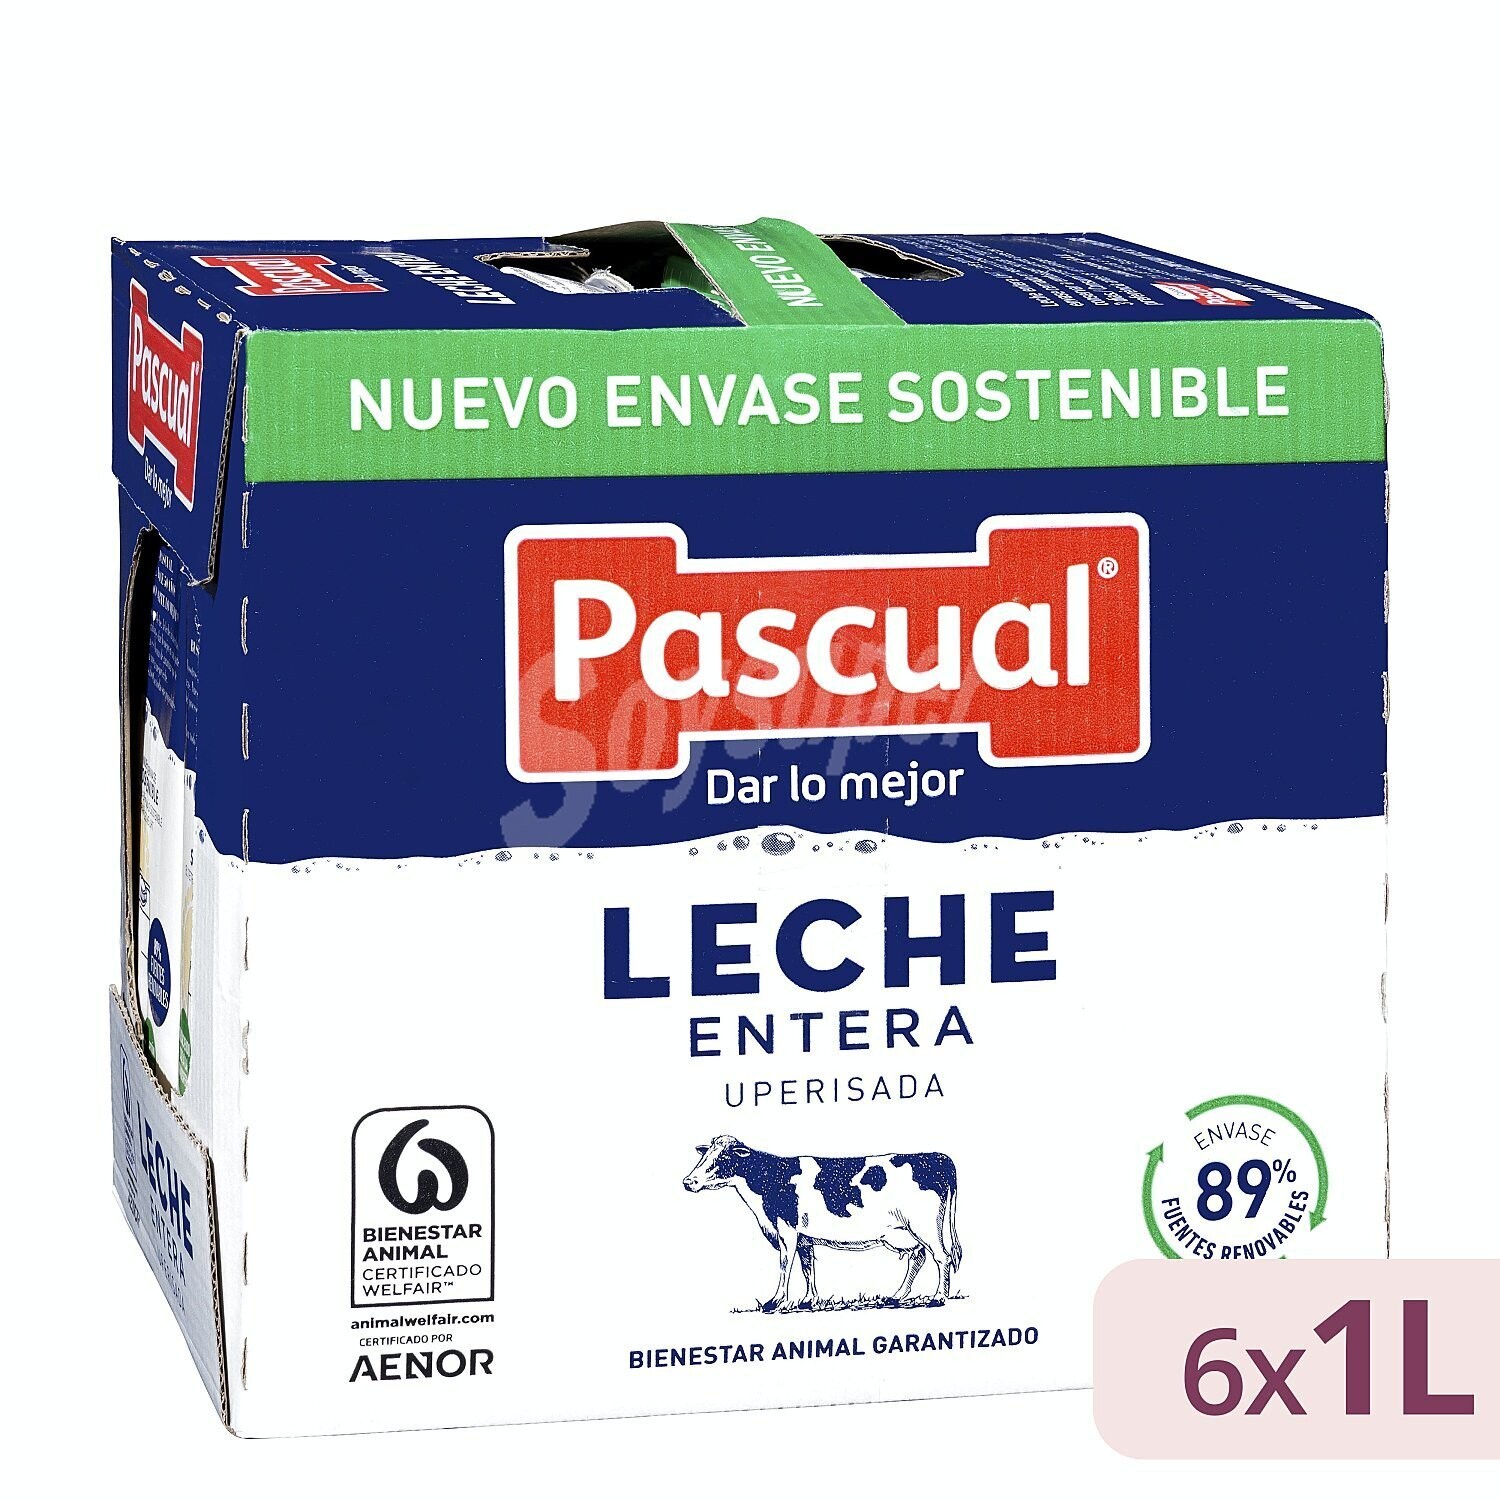 Comprar Leche entera pascual p6x200ml en Supermercados MAS Online